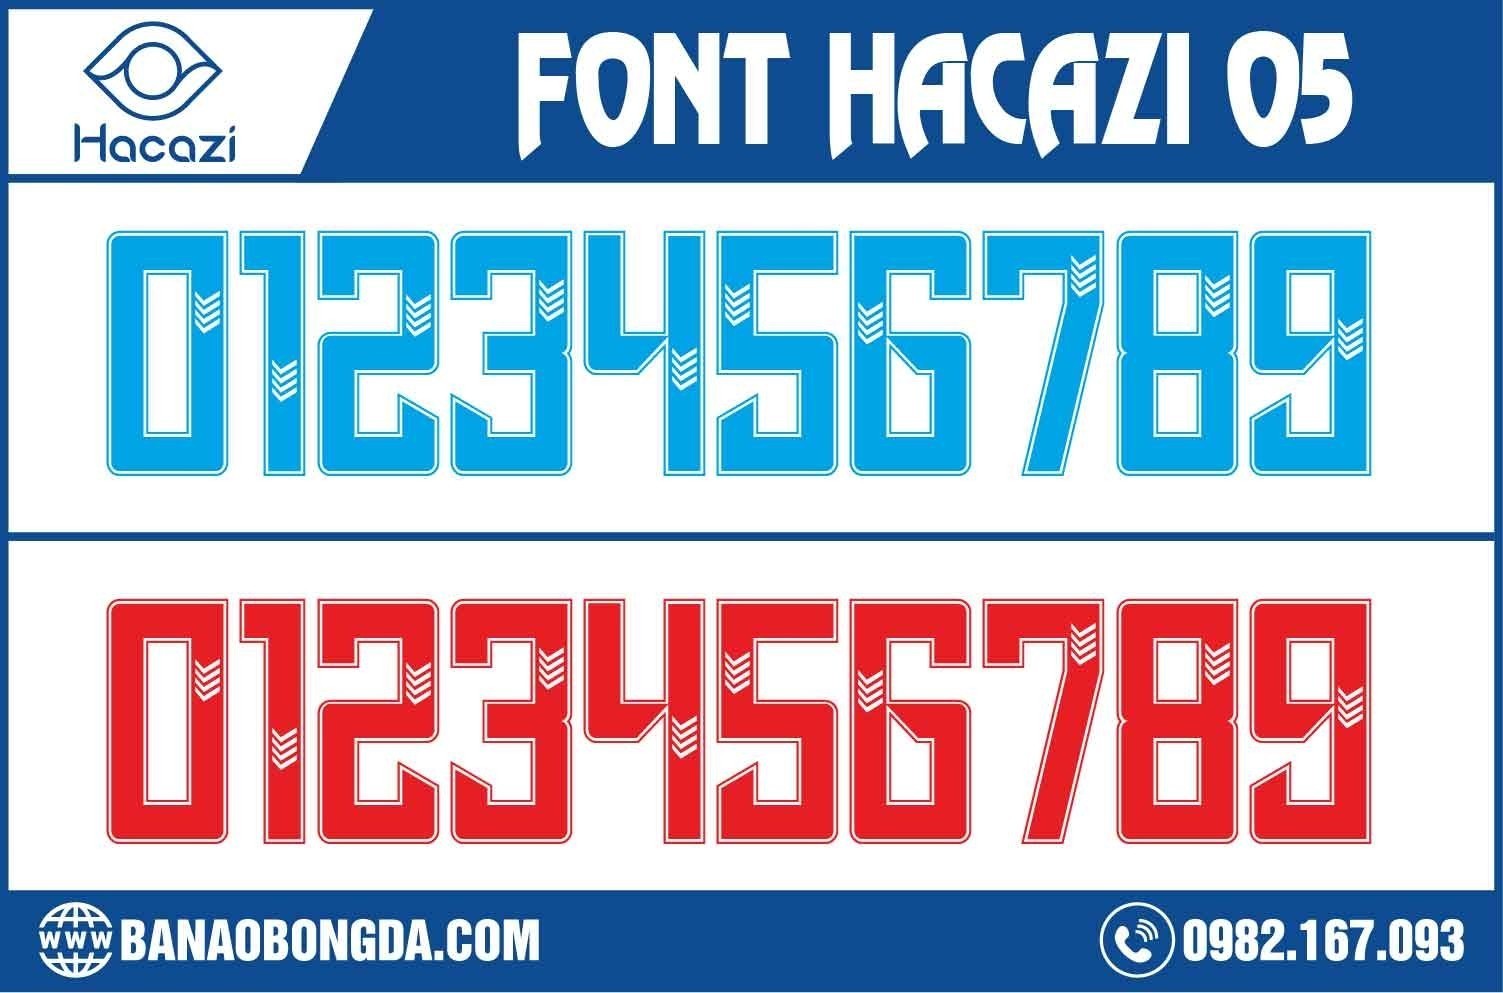 Bạn đã sẵn sàng sở hữu ngay bộ font số áo bóng đá 05 độc quyền chỉ có tại Shop Hacazi Sport này chưa? Đặc biệt đây chính là thiết kế phù hợp với những ai yêu thích sự đơn giản nhưng không hề đơn điệu. Màu đỏ và xanh ya bạn chọn màu sắc nào nhỉ?  